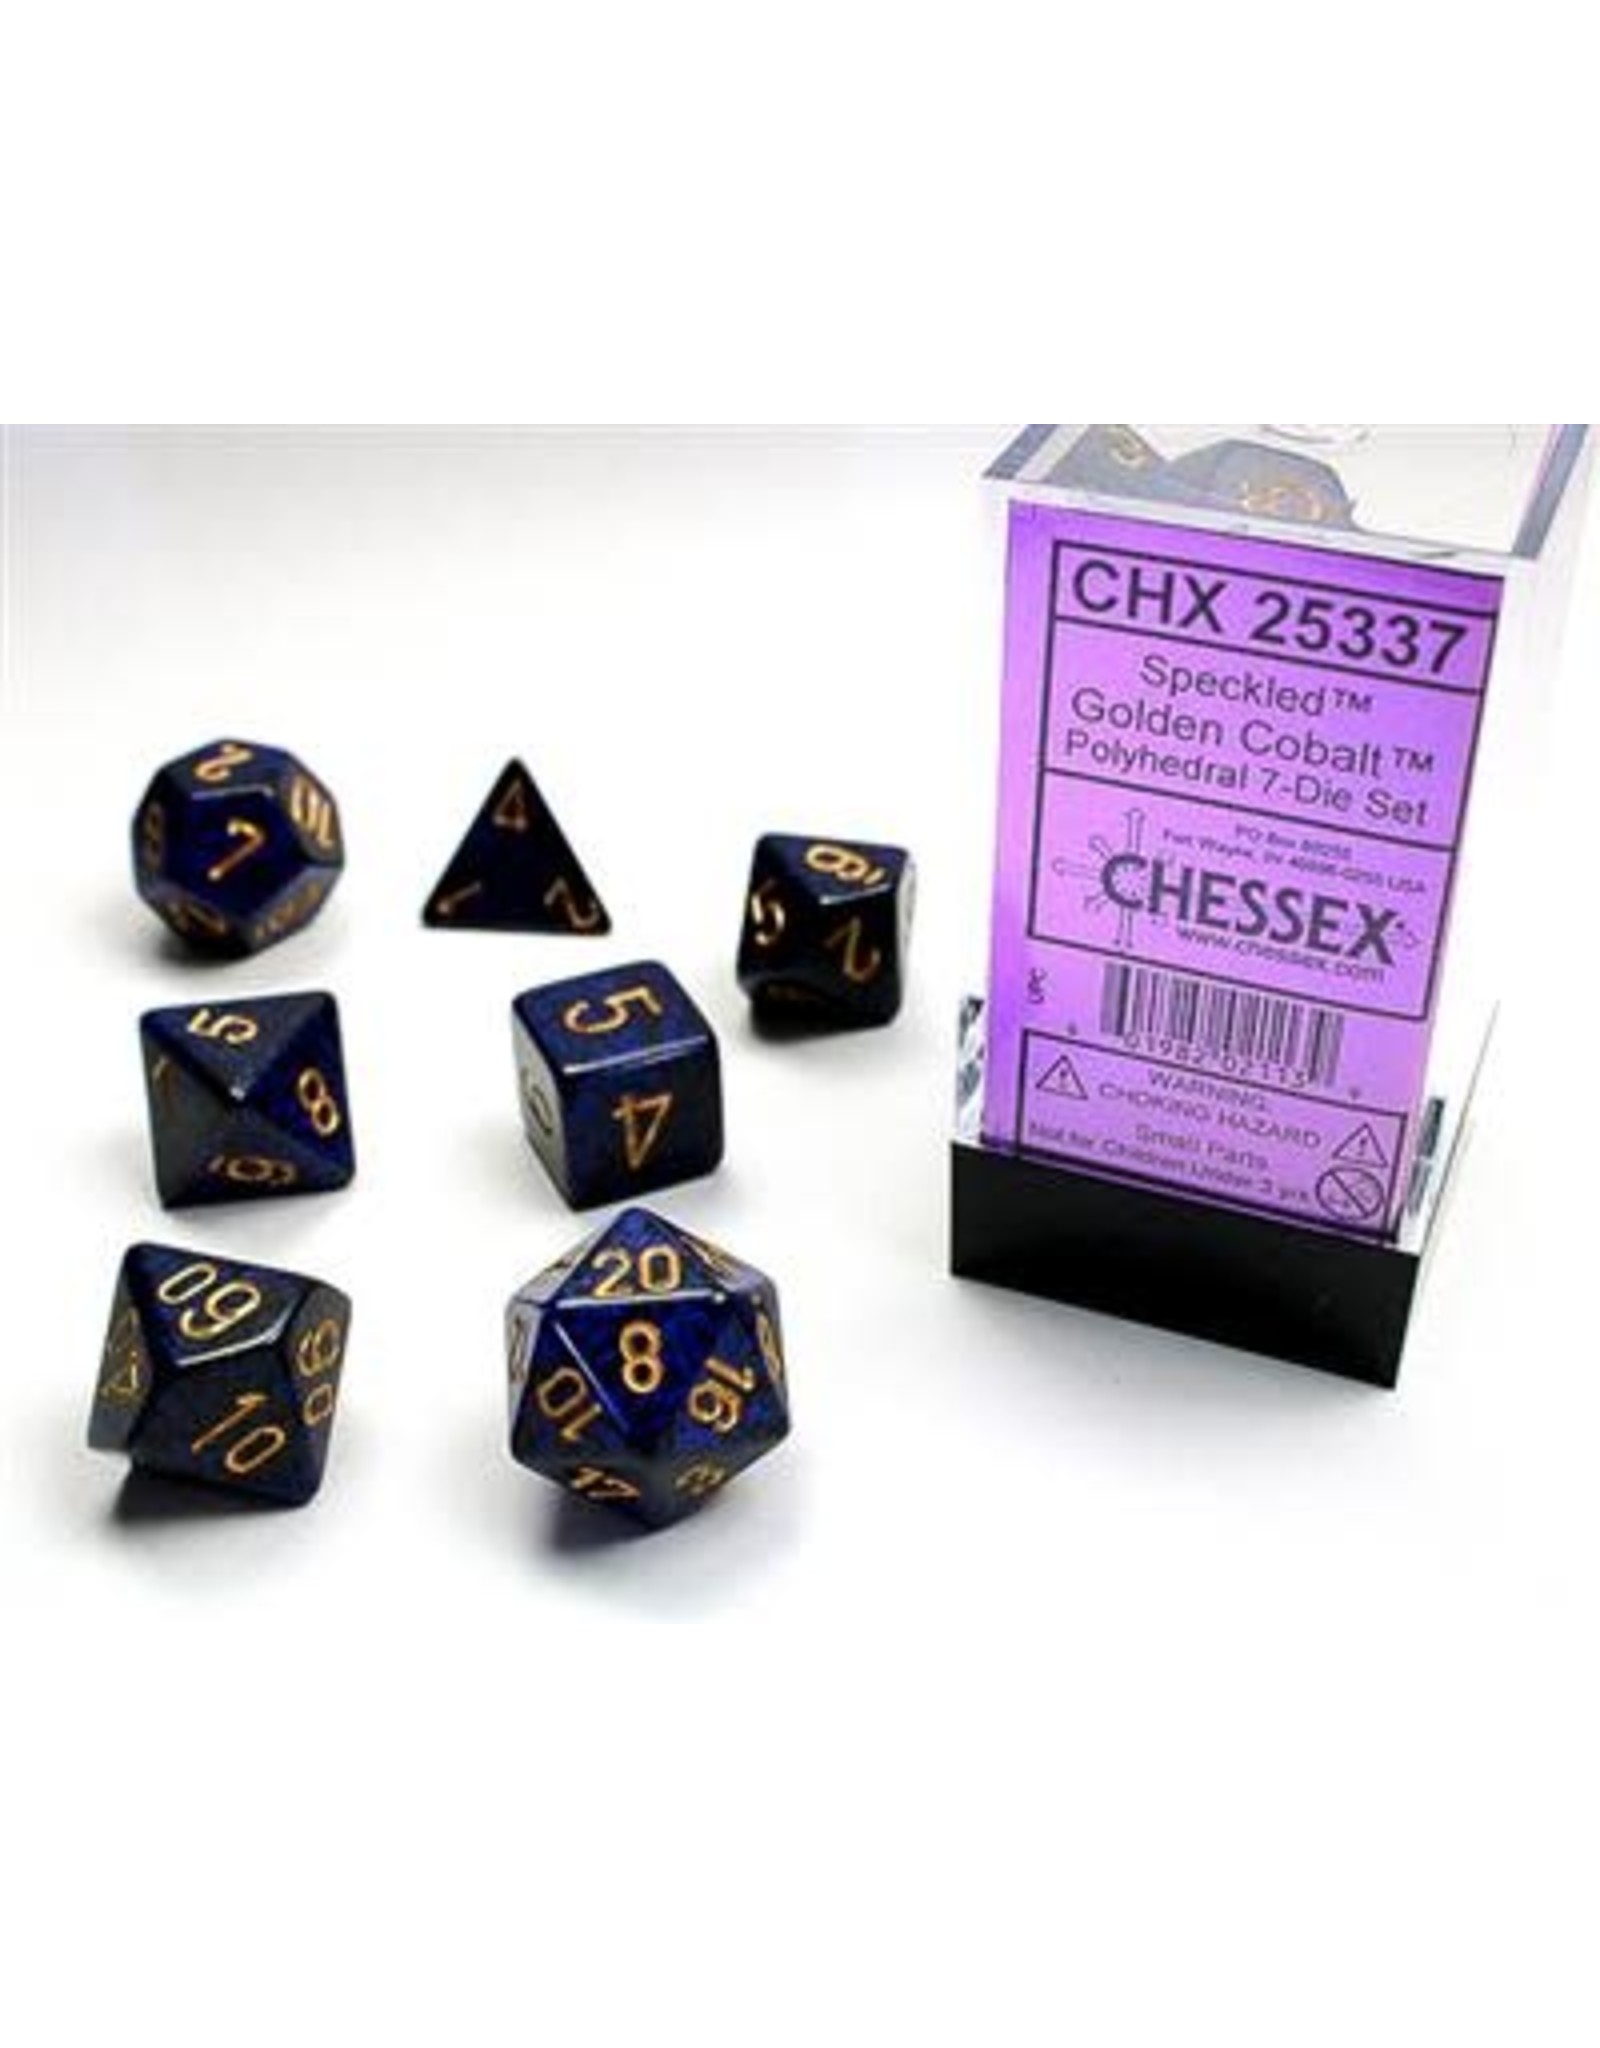 Chessex RPG Dice Set: 7-Set Speckled® Polyhedral Golden Cobalt™